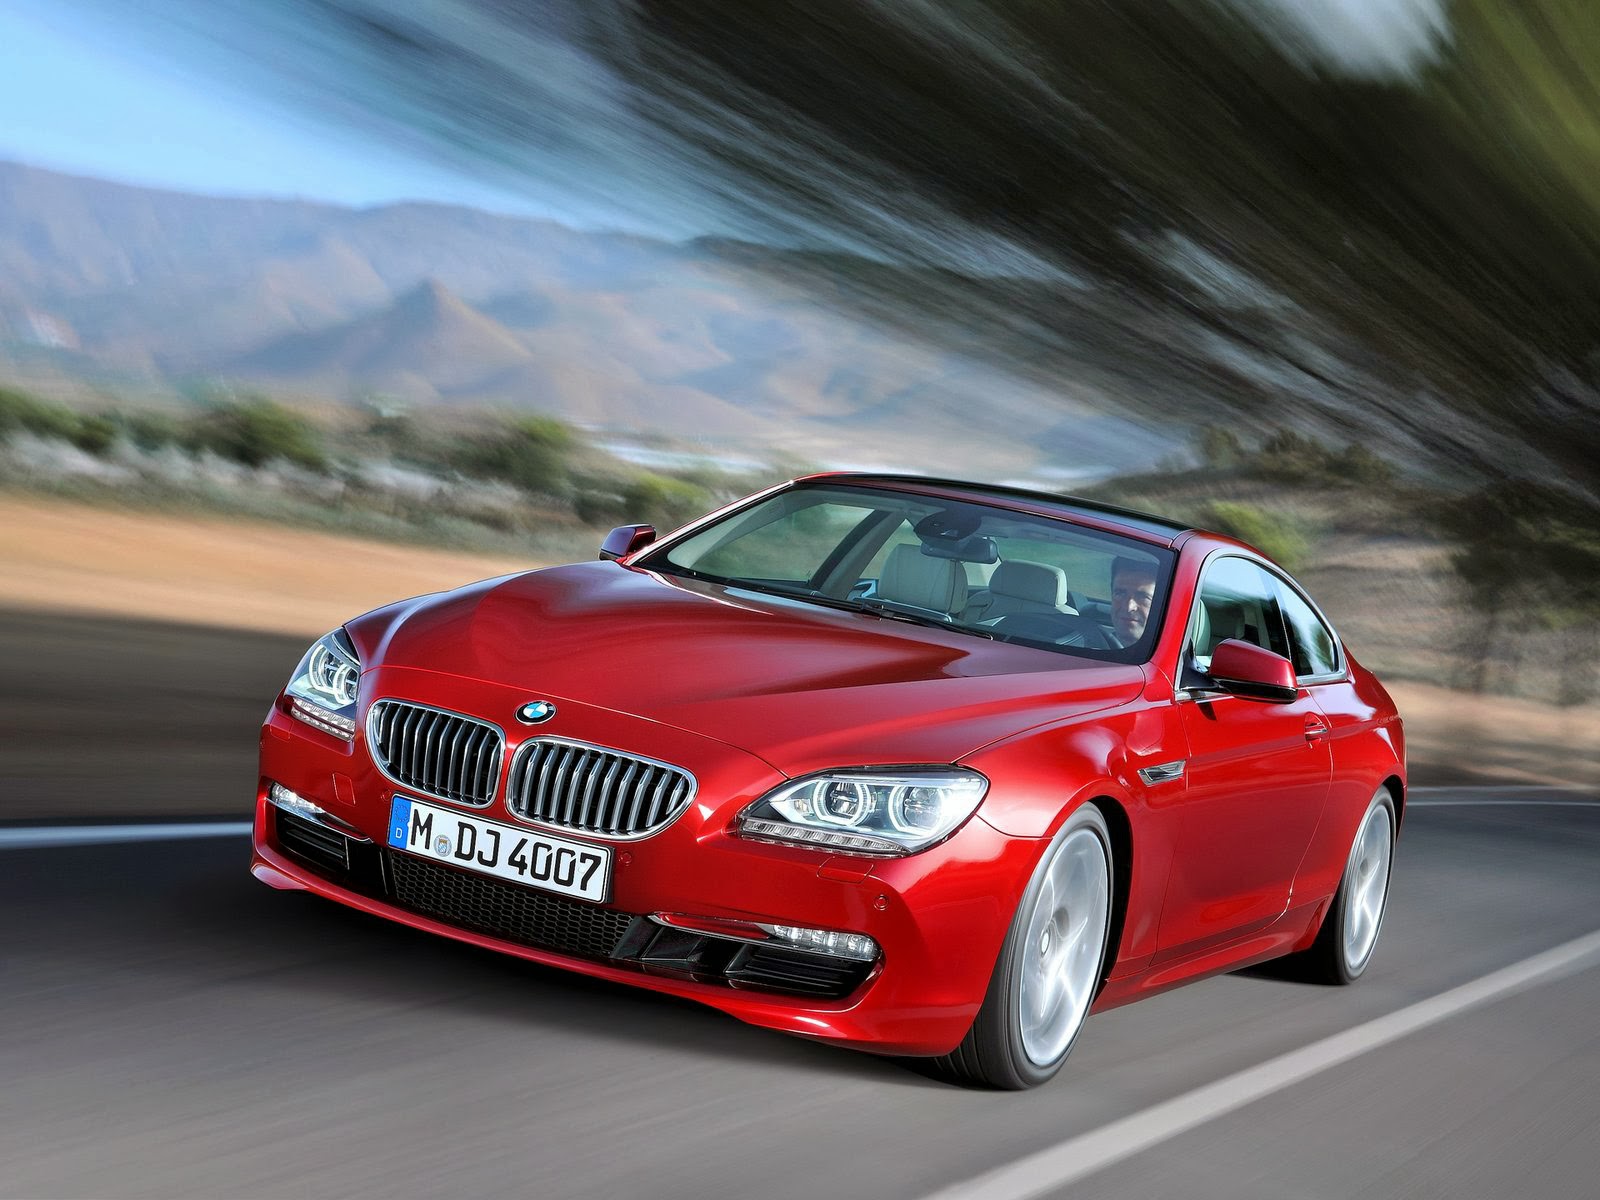 Gambar-gambar mobil BMW Terbaru 2014 Sport dan Mewah ~ Informasi